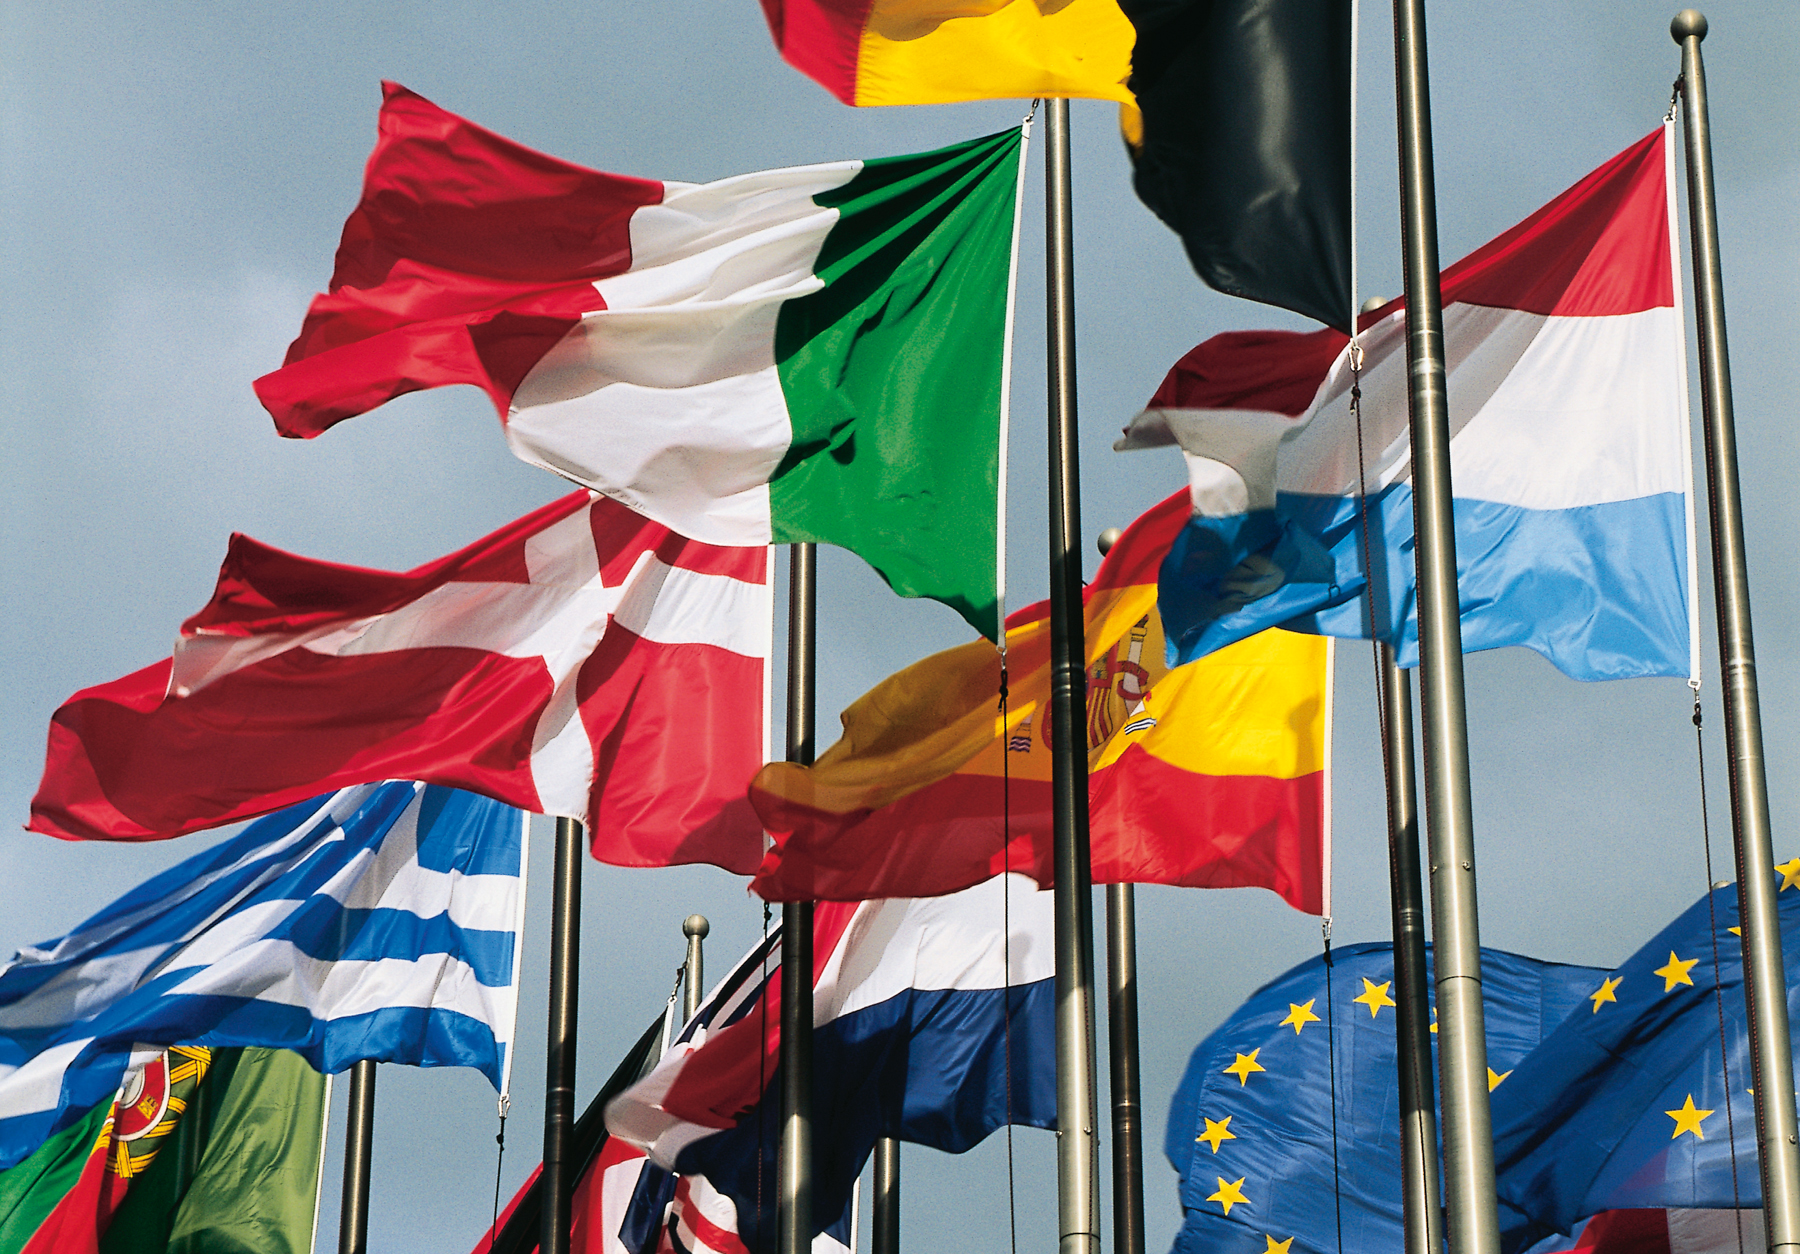 wehende Flaggen der Länder Schweiz, Griechenland, Spanien, Luxemburg, Italien, Niederlande, Portugal, England und Belgien sowie der Europäischen Union